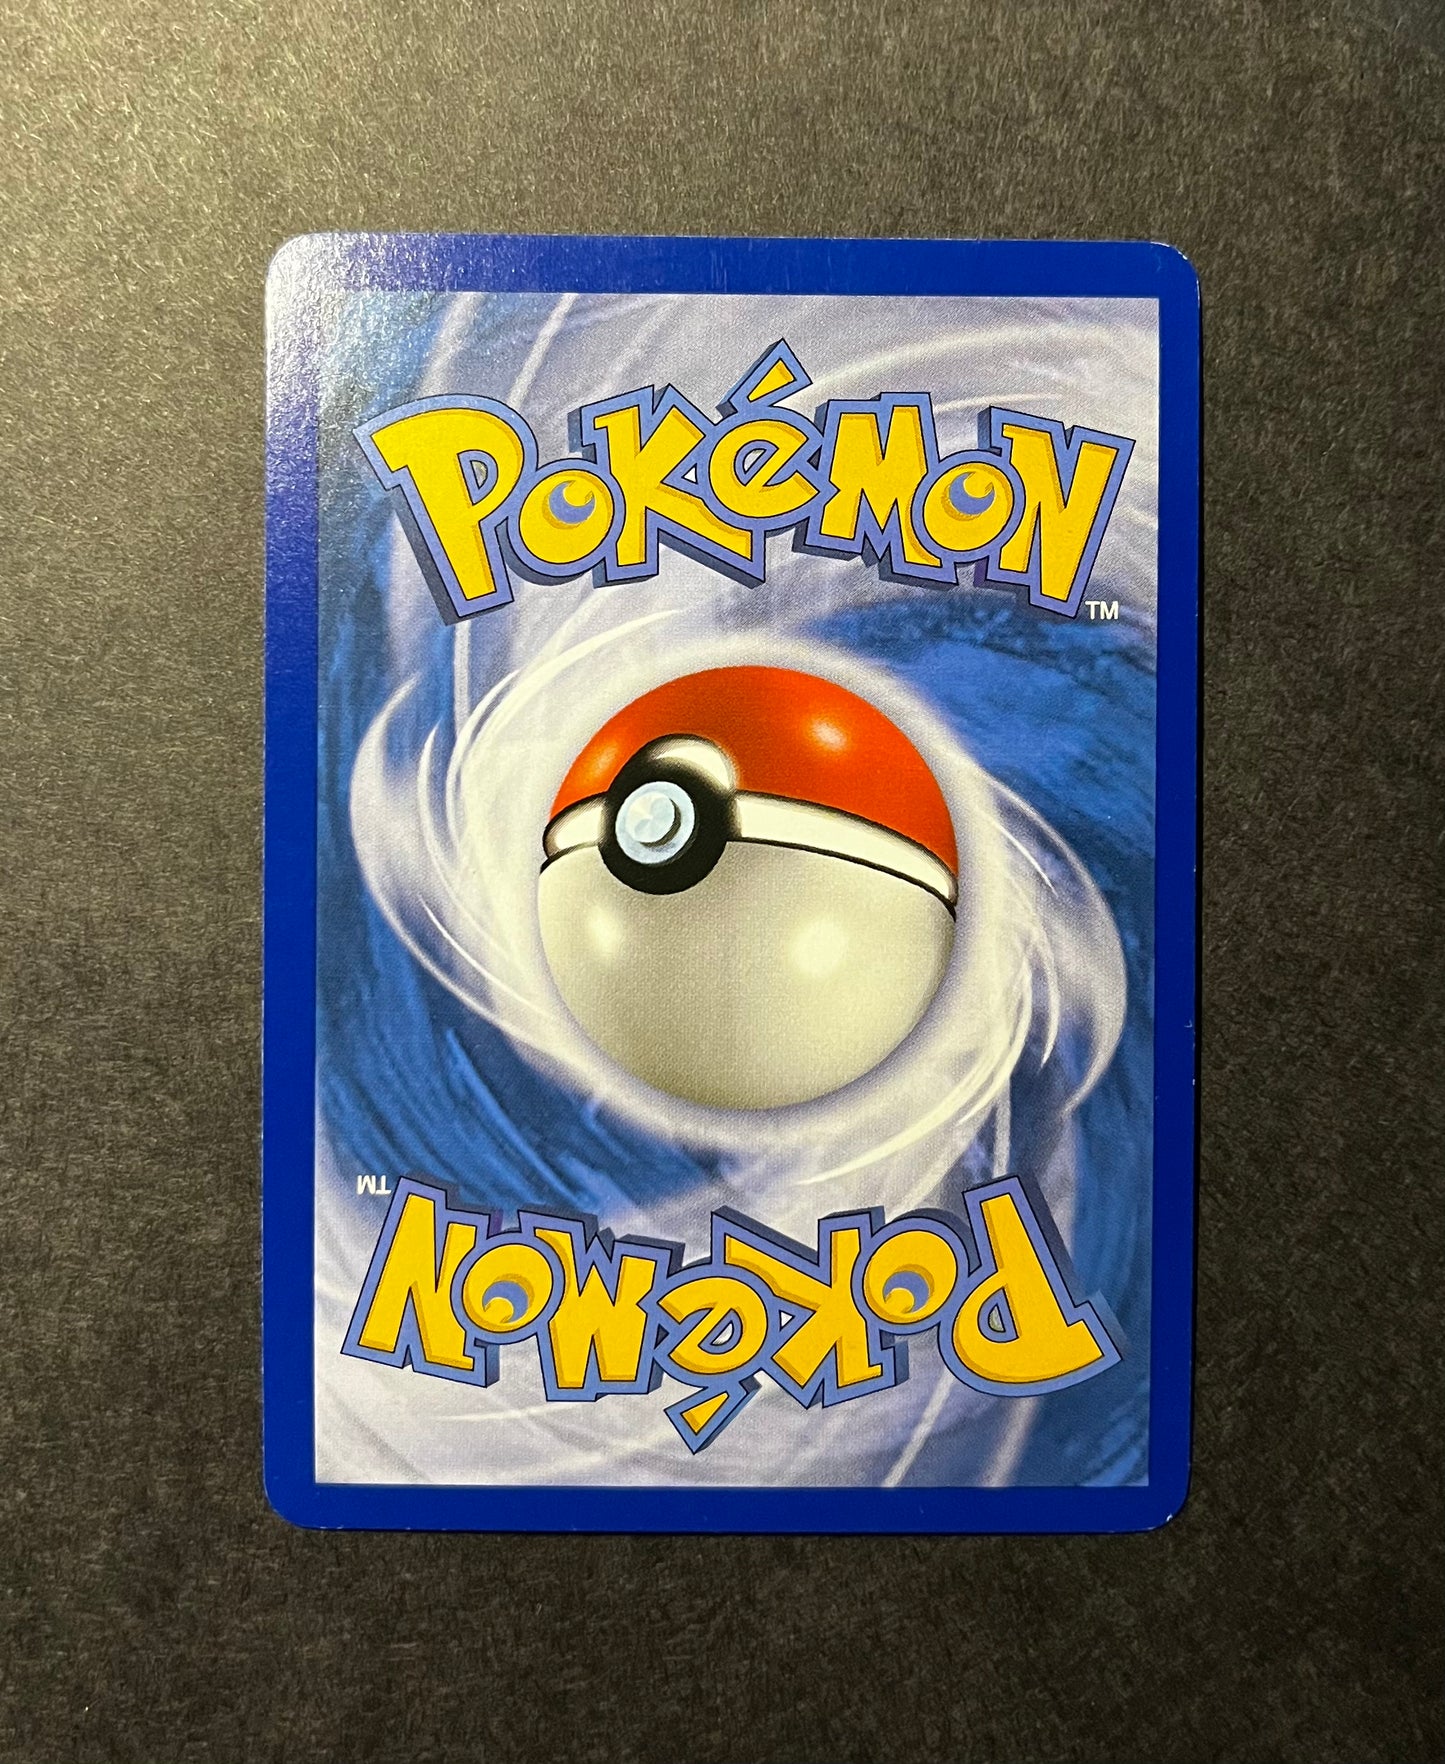 Gardevoir #8 Pokemon Platinum (EX)